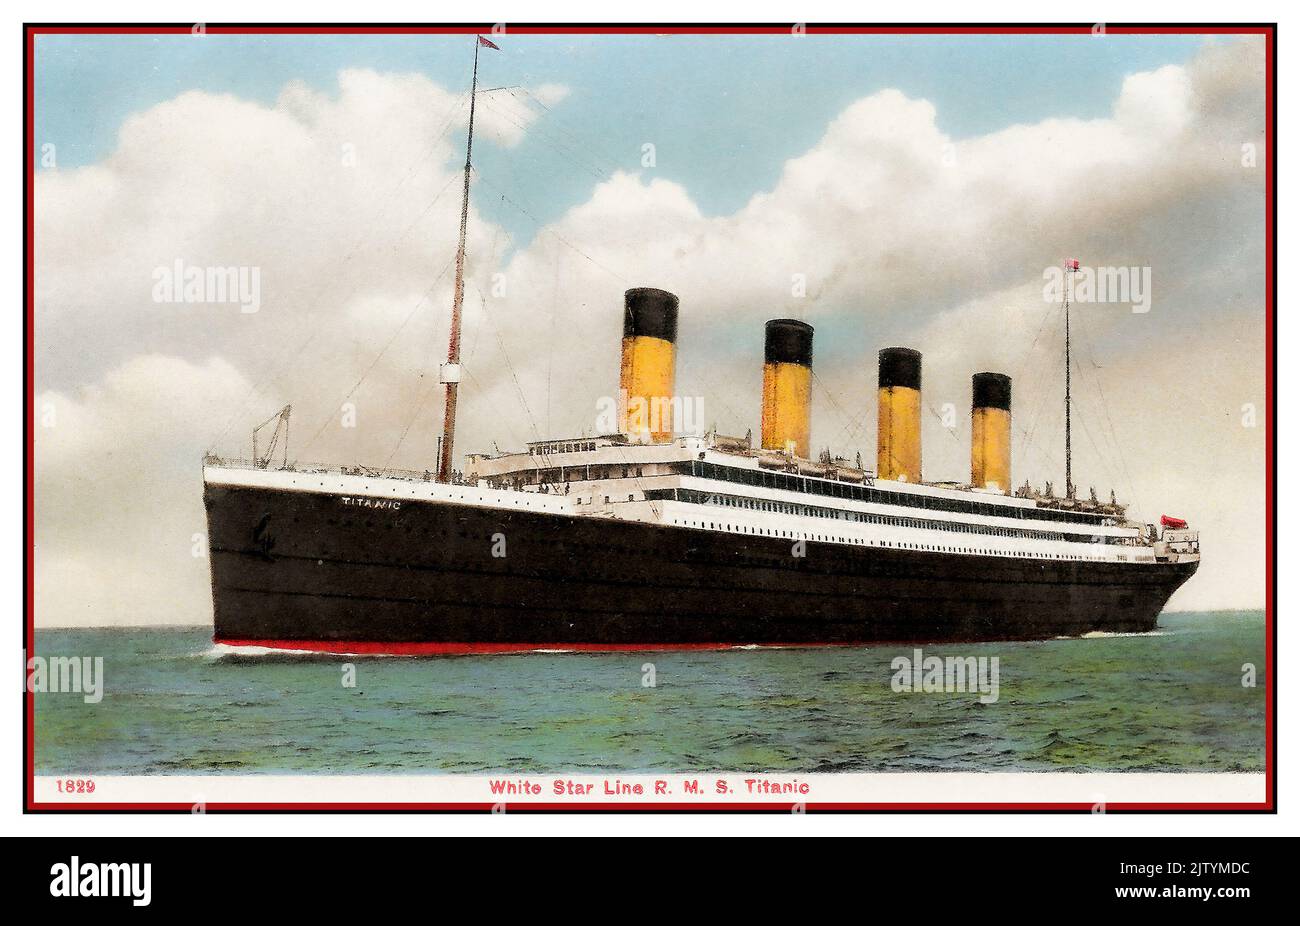 TITANIC Ocean Liner promotioal cartolina di RMS Titanic in mare sotto la bandiera della stella bianca 1911 RMS Titanic era una linea britannica di passeggeri, operata dalla linea della stella bianca, Che affondò nell'Oceano Atlantico settentrionale il 15 aprile 1912 dopo aver colto un iceberg durante il suo primo viaggio da Southampton, Regno Unito, a New York City, Stati Uniti. Foto Stock